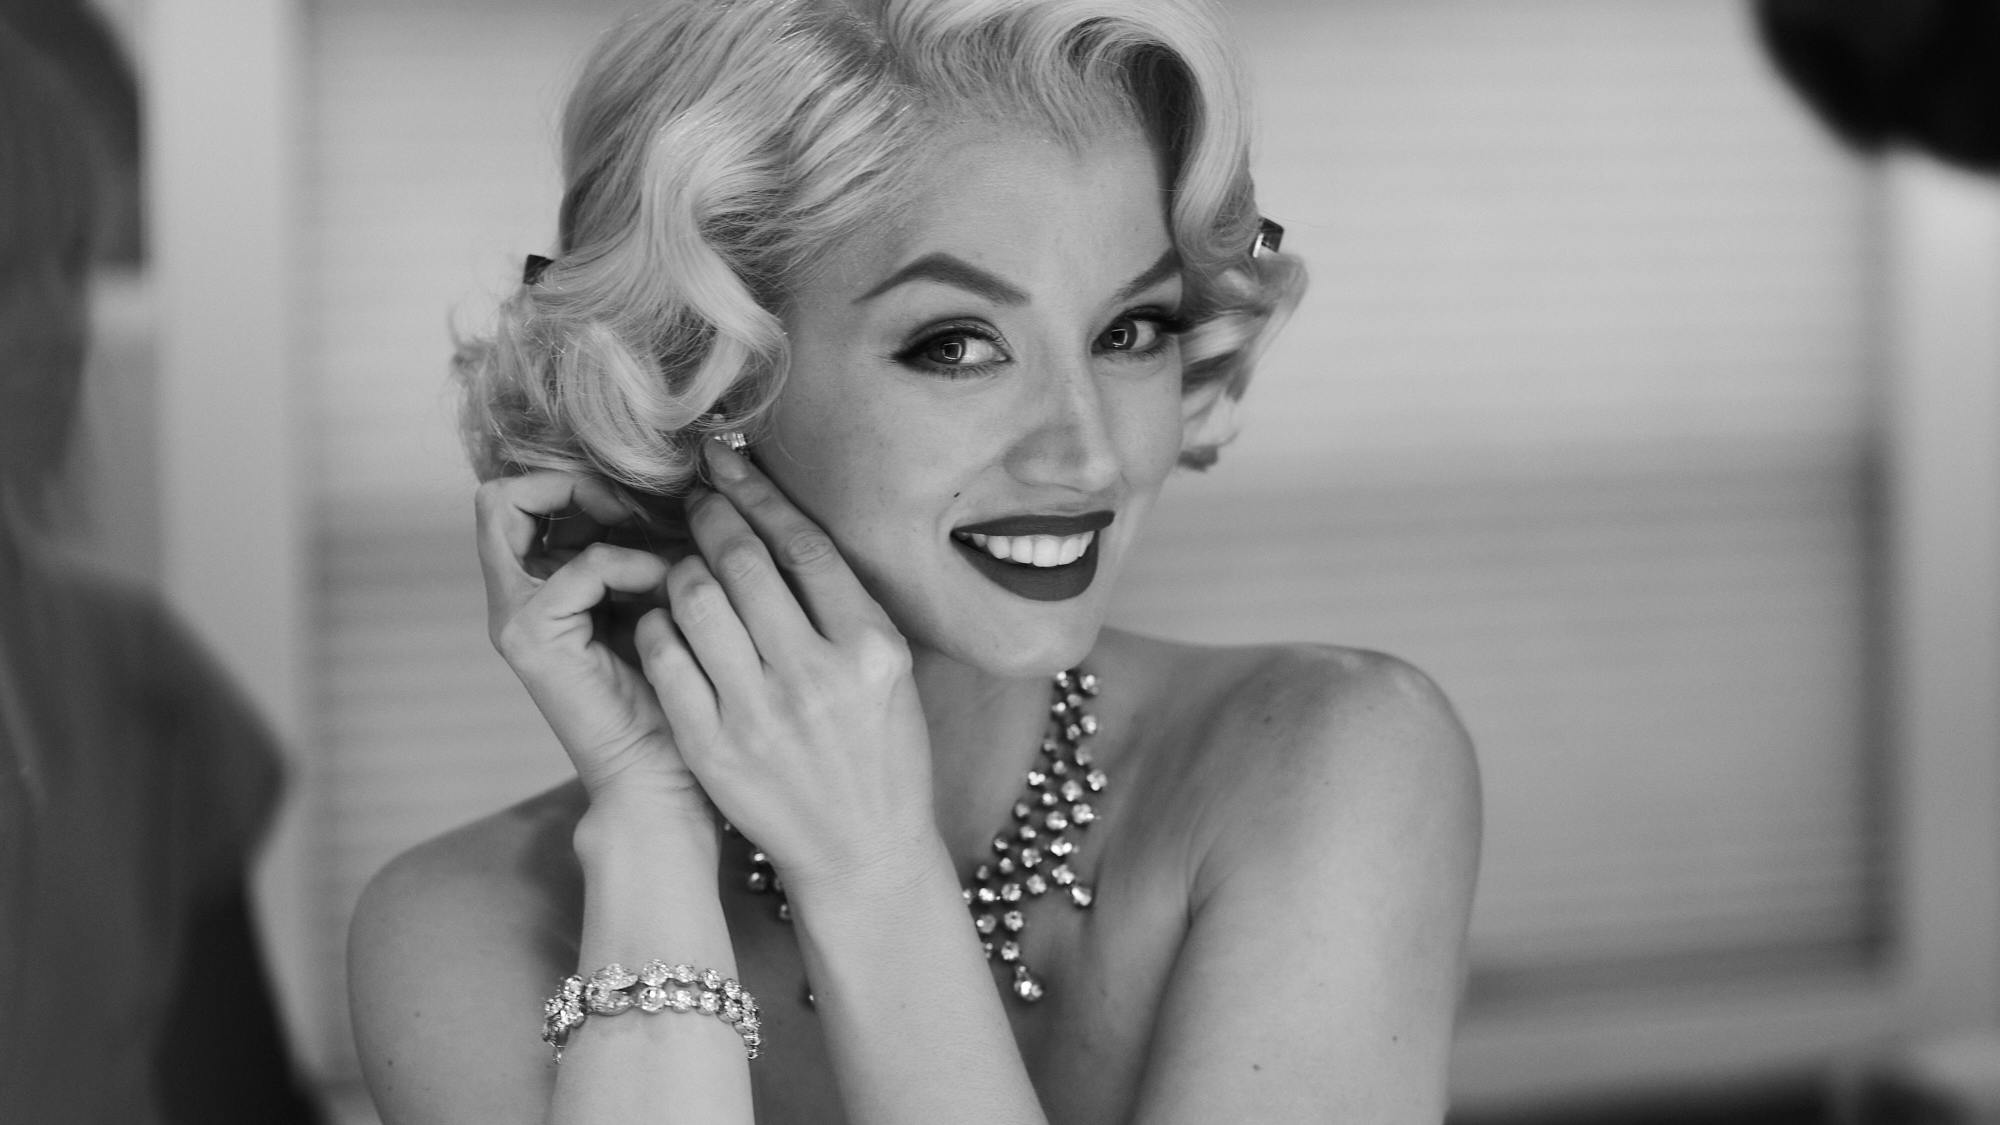 Ana de Armas as Marilyn Monroe in Blonde Pictures